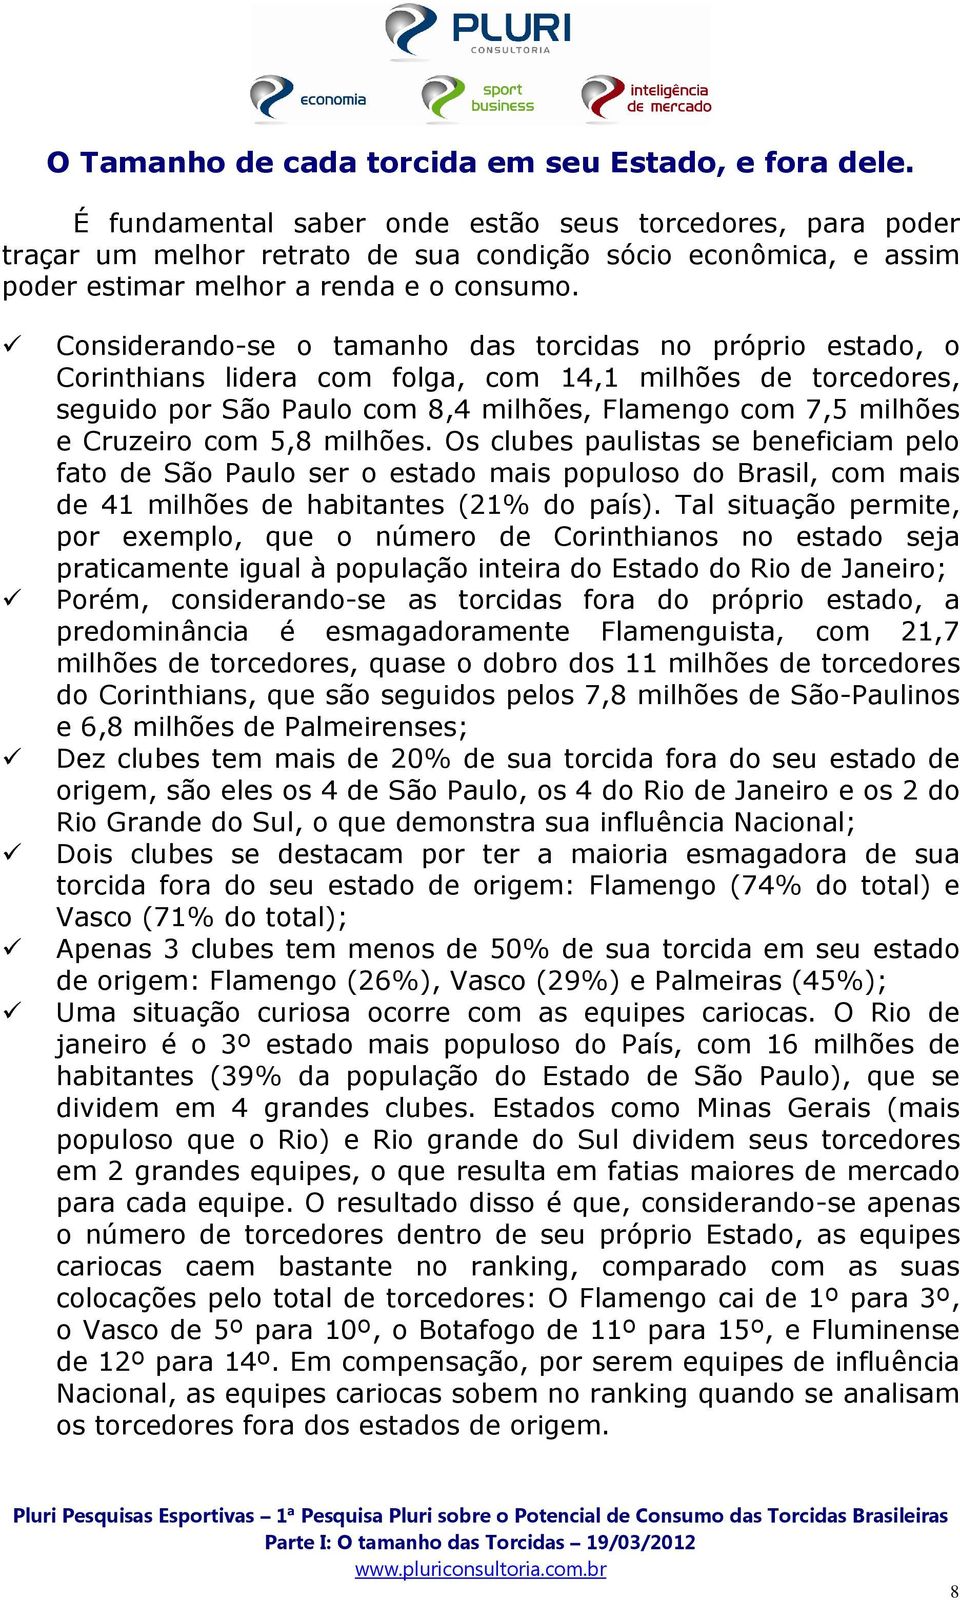 Considerando-se o tamanho das torcidas no próprio estado, o Corinthians lidera com folga, com 14,1 milhões de torcedores, seguido por São Paulo com 8,4 milhões, Flamengo com 7,5 milhões e Cruzeiro